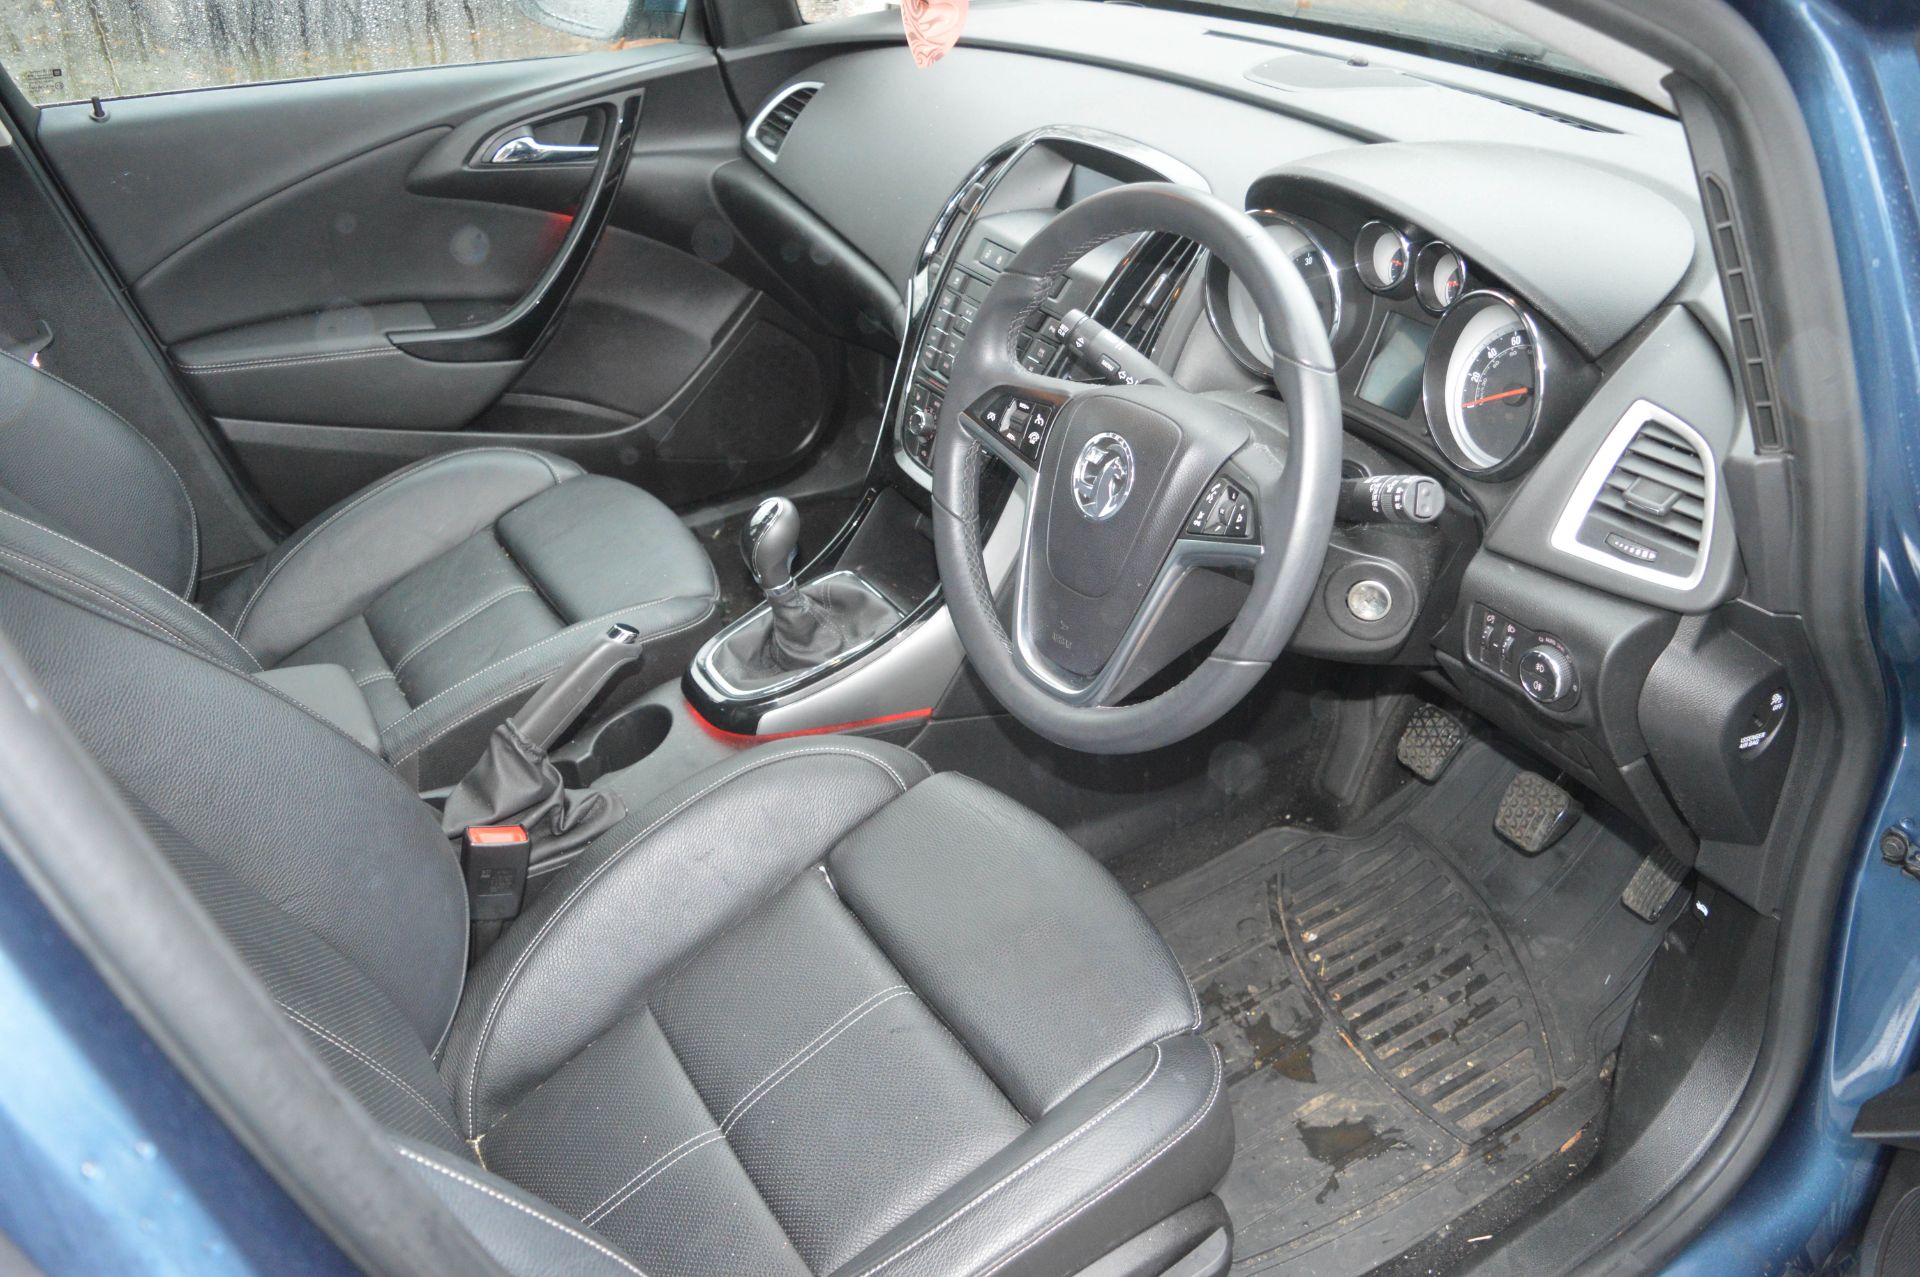 Vauxhall Astra 1.6i VVT 16v Elite 5 door hatchback car Registration Number: DV65 ZZK Date of - Image 7 of 8